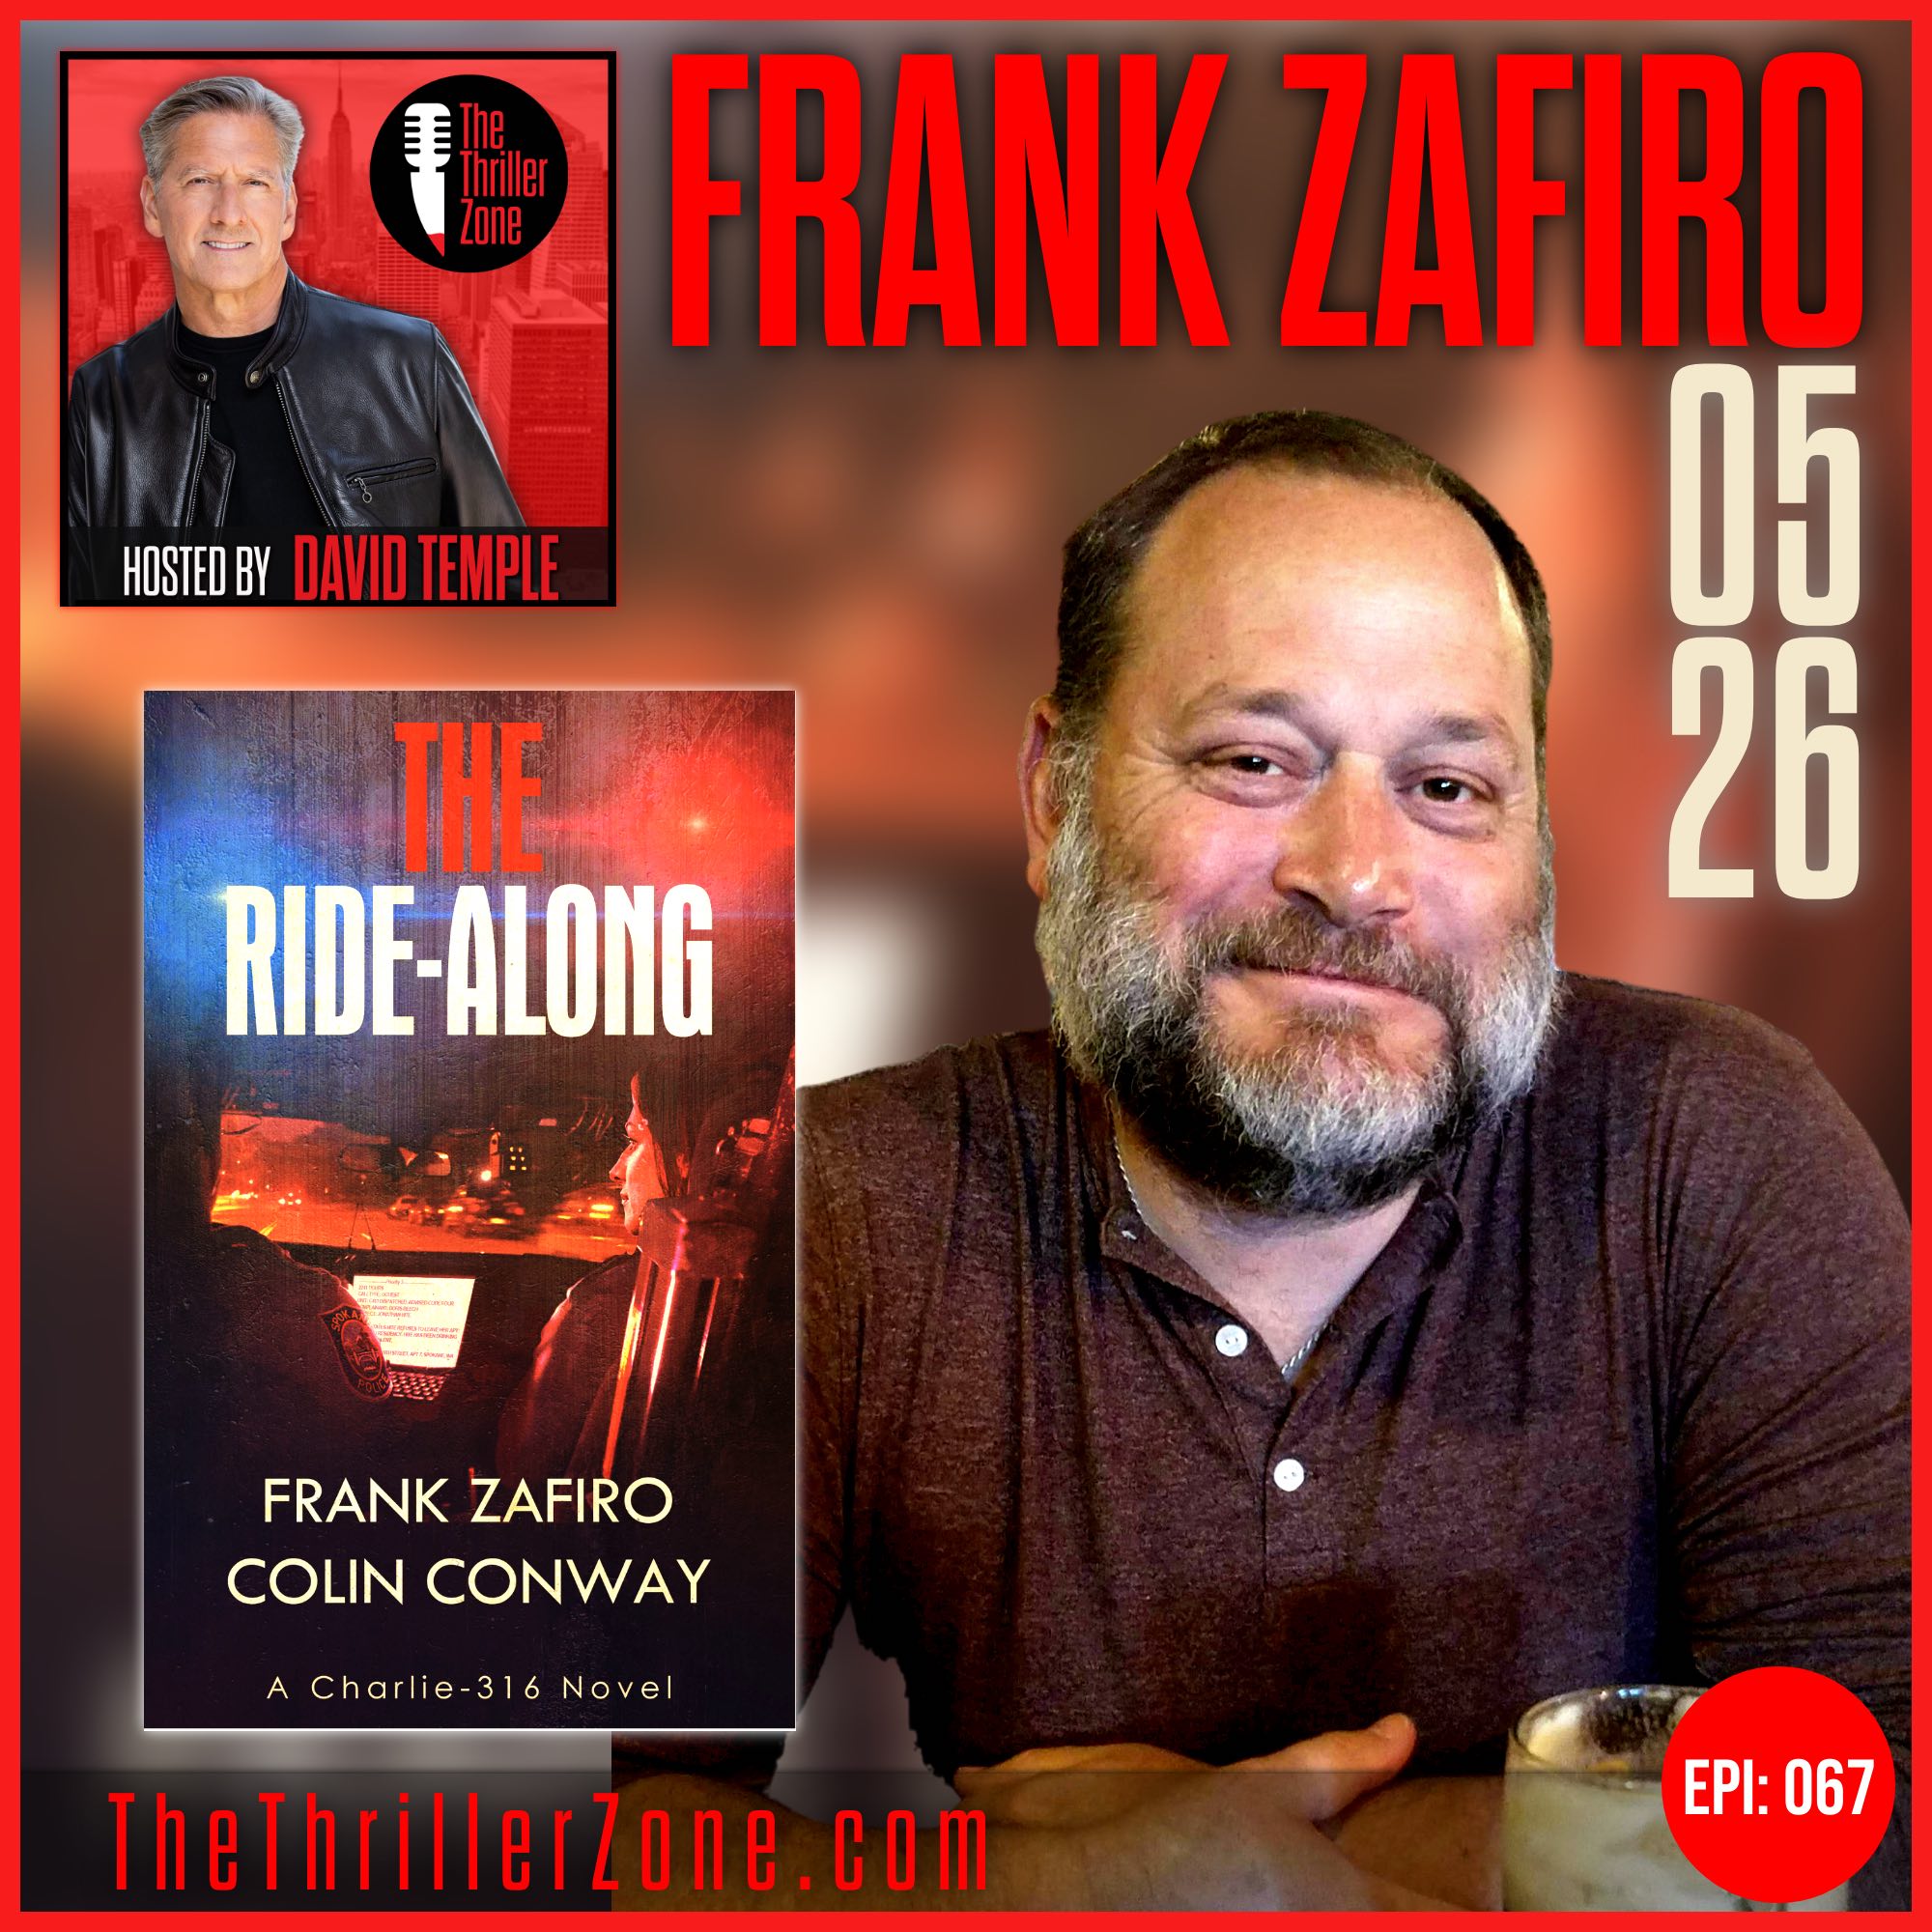 Frank Zafiro, author of The Ride Along